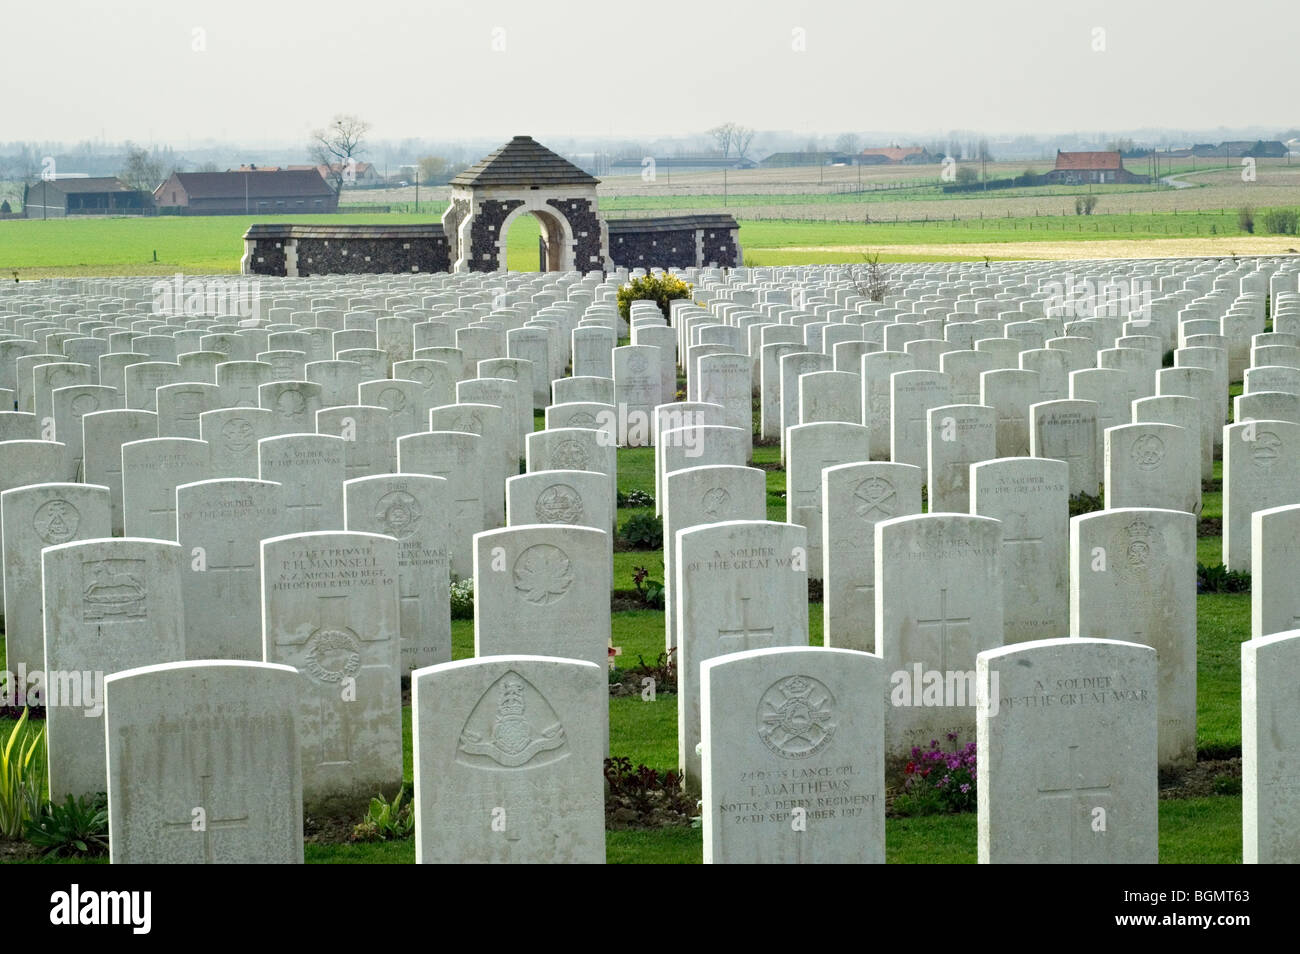 Les rangées de pierres tombales blanches des soldats de la PREMIÈRE GUERRE MONDIALE tombés lors de la Première Guerre mondiale un cimetière de Tyne Cot, Passendale, Flandre occidentale, Belgique Banque D'Images